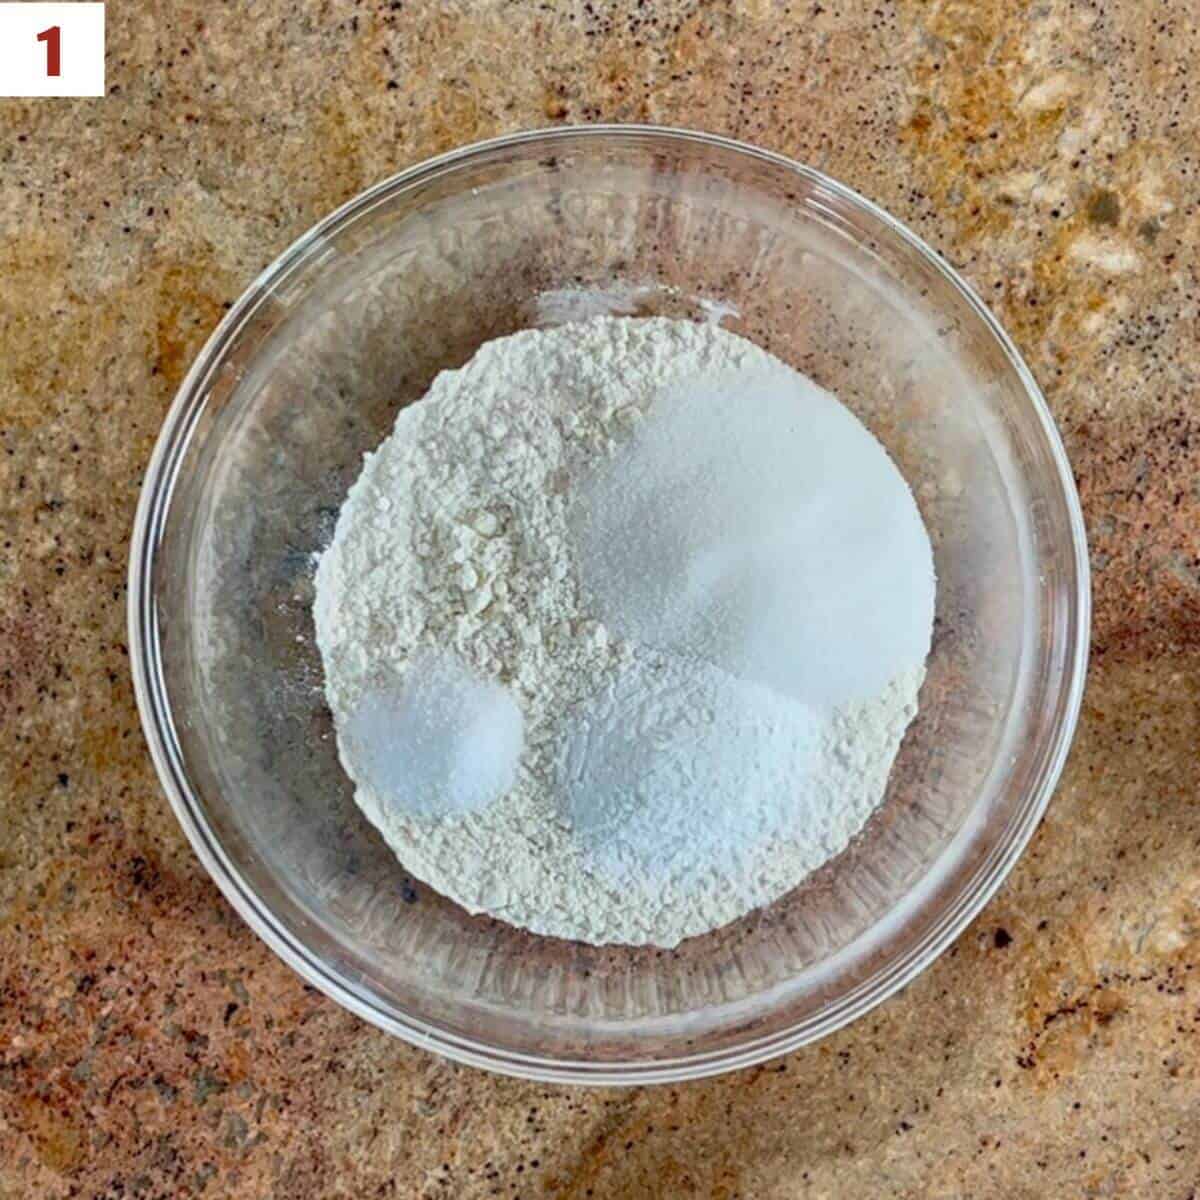 Flour, sugar, baking powder, & salt in a glass bowl.